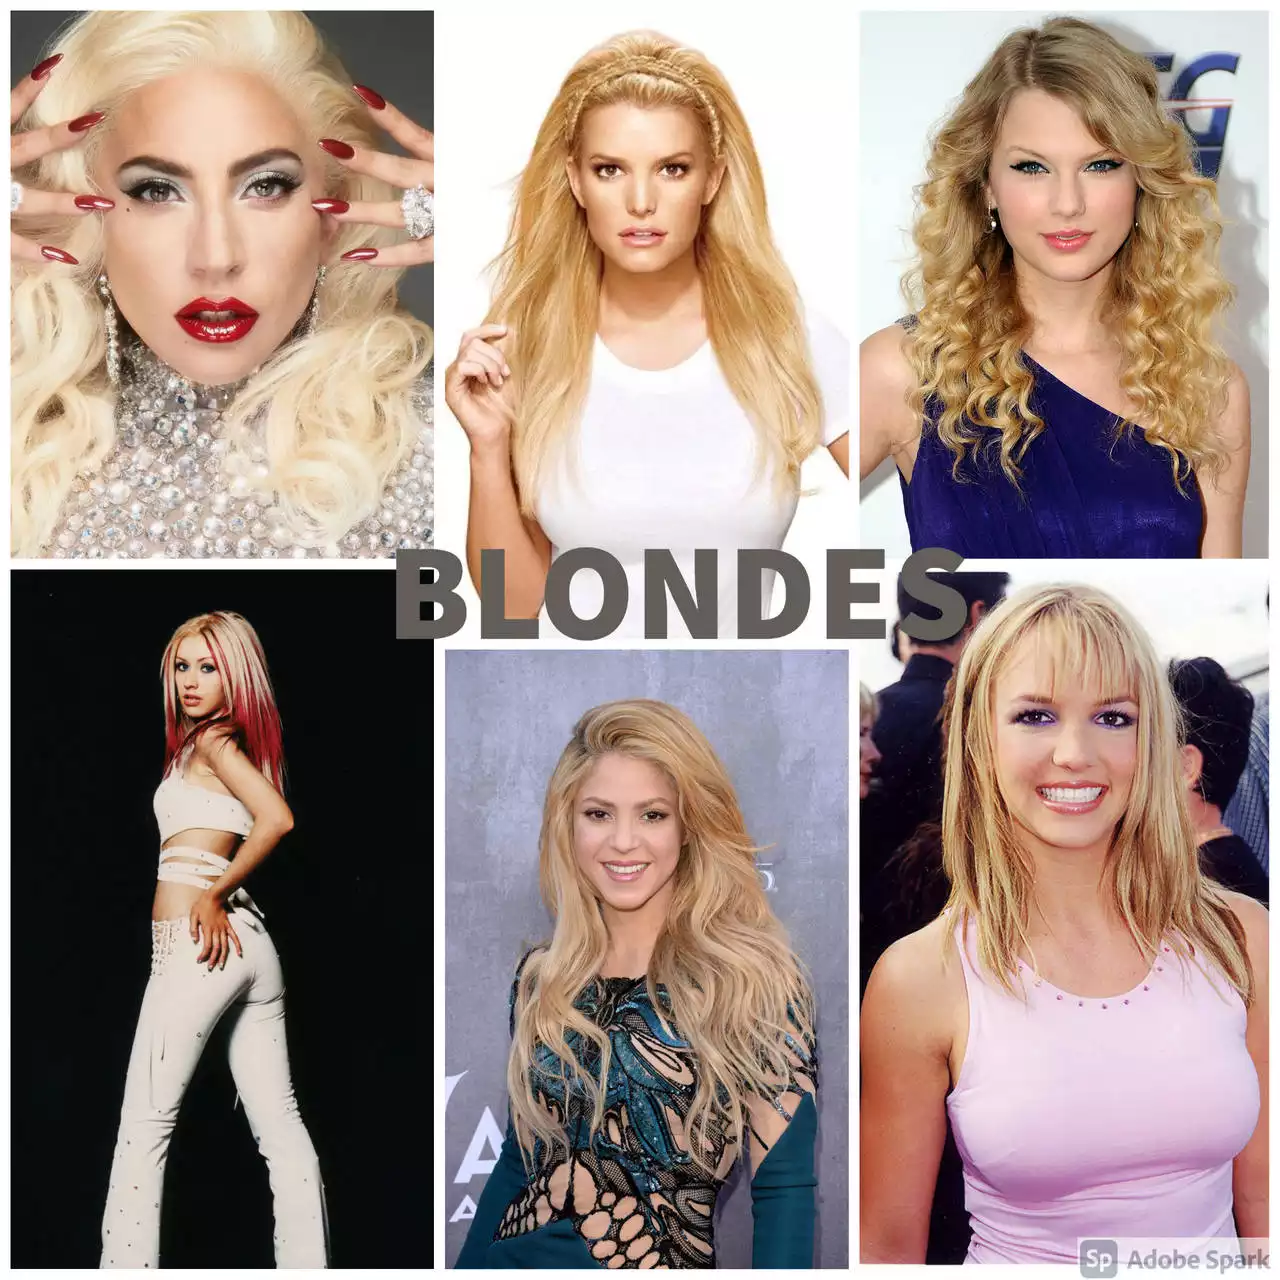 Blonde singers